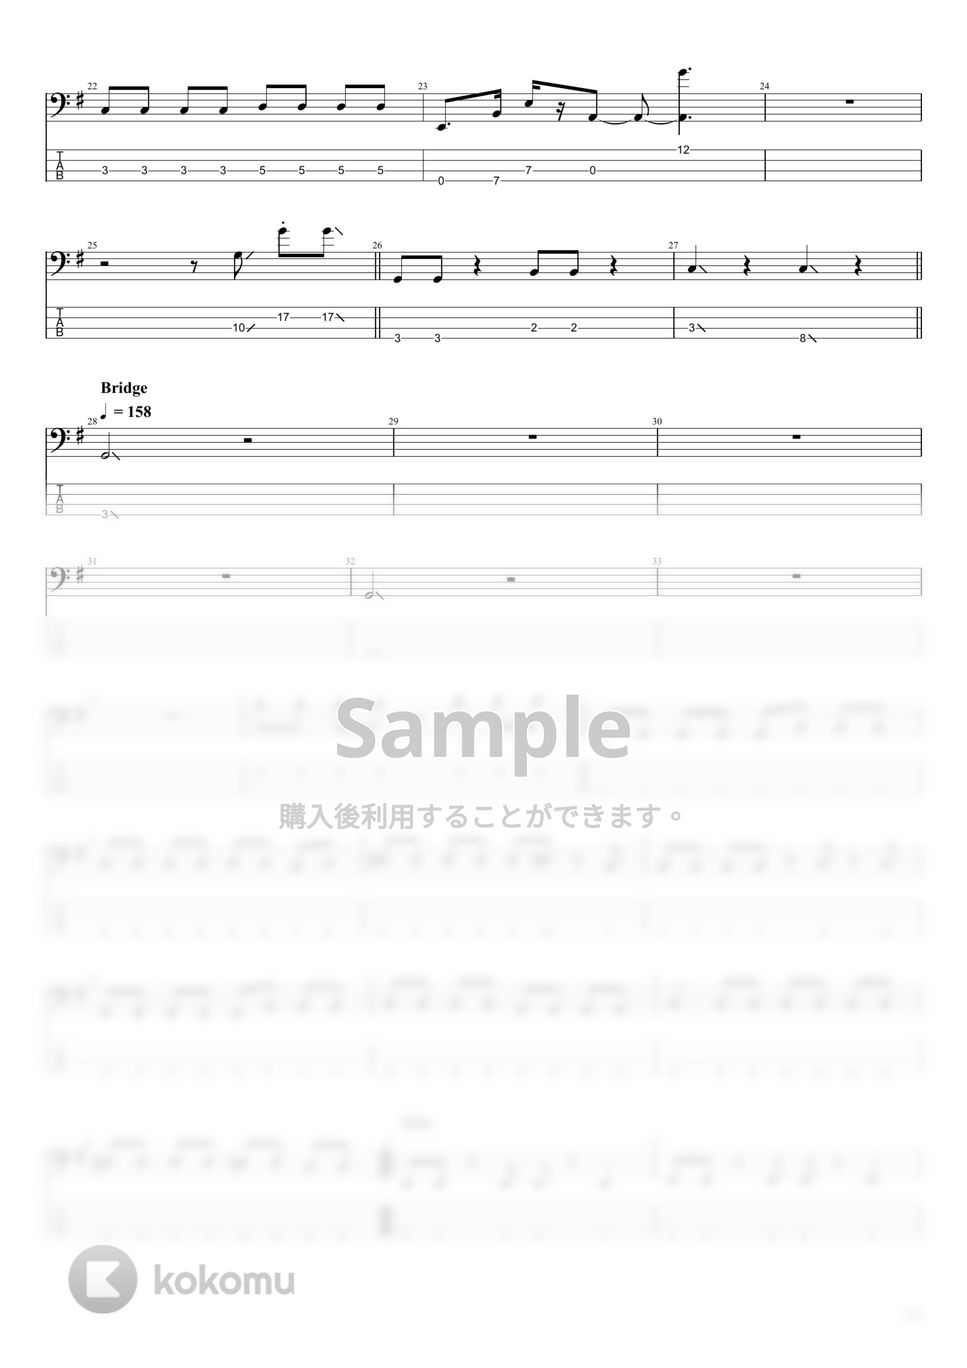 マカロニえんぴつ - マカロニえんぴつ楽譜集Vol.3 (10曲) by まっきん